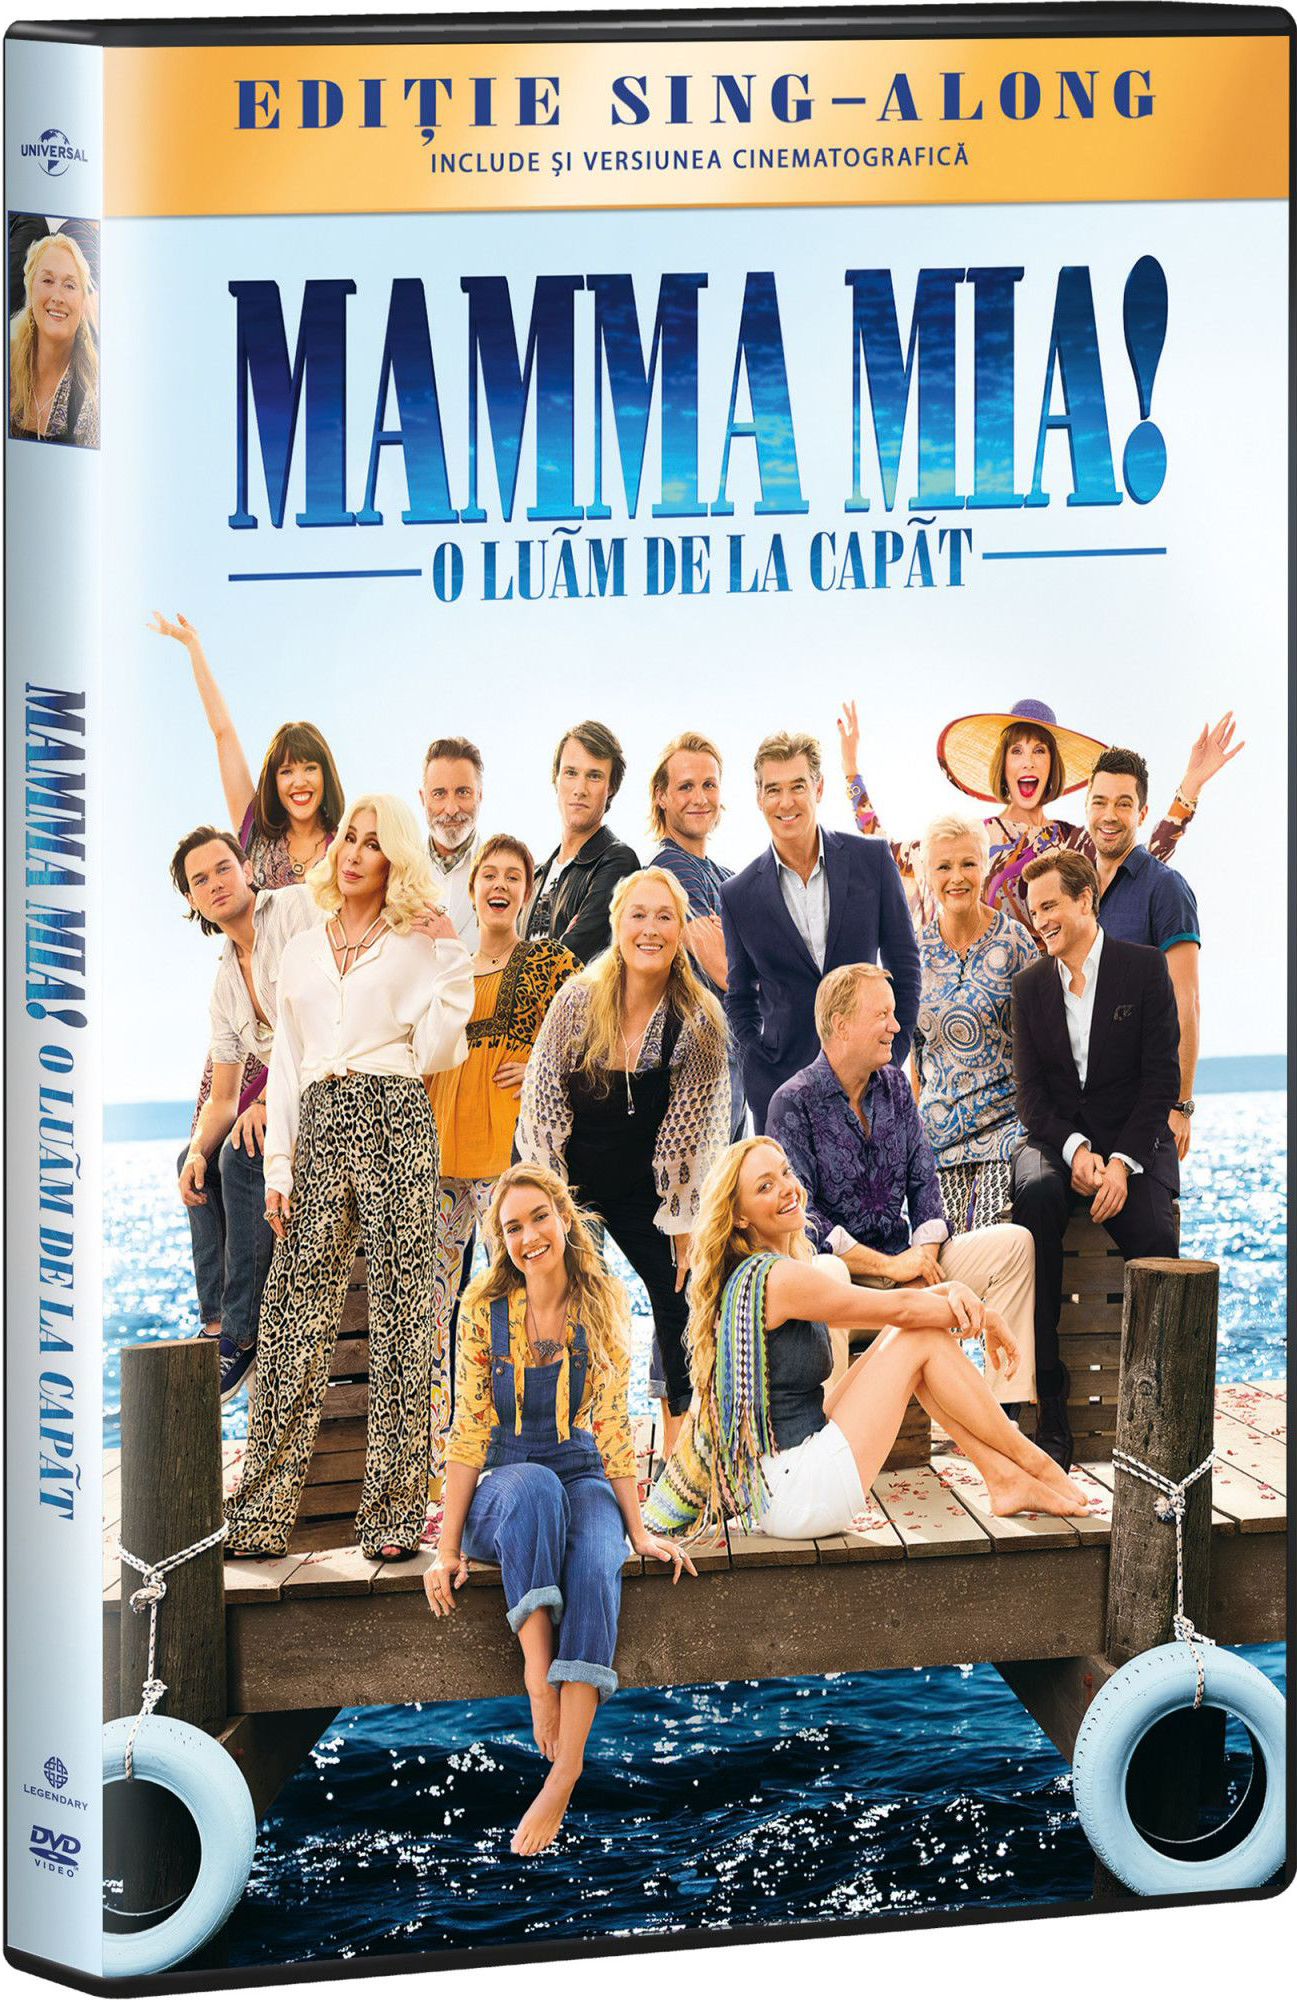 Mamma Mia! 2 -O Luam De La Capat / Mamma Mia! Here We Go Again | Ol Parker